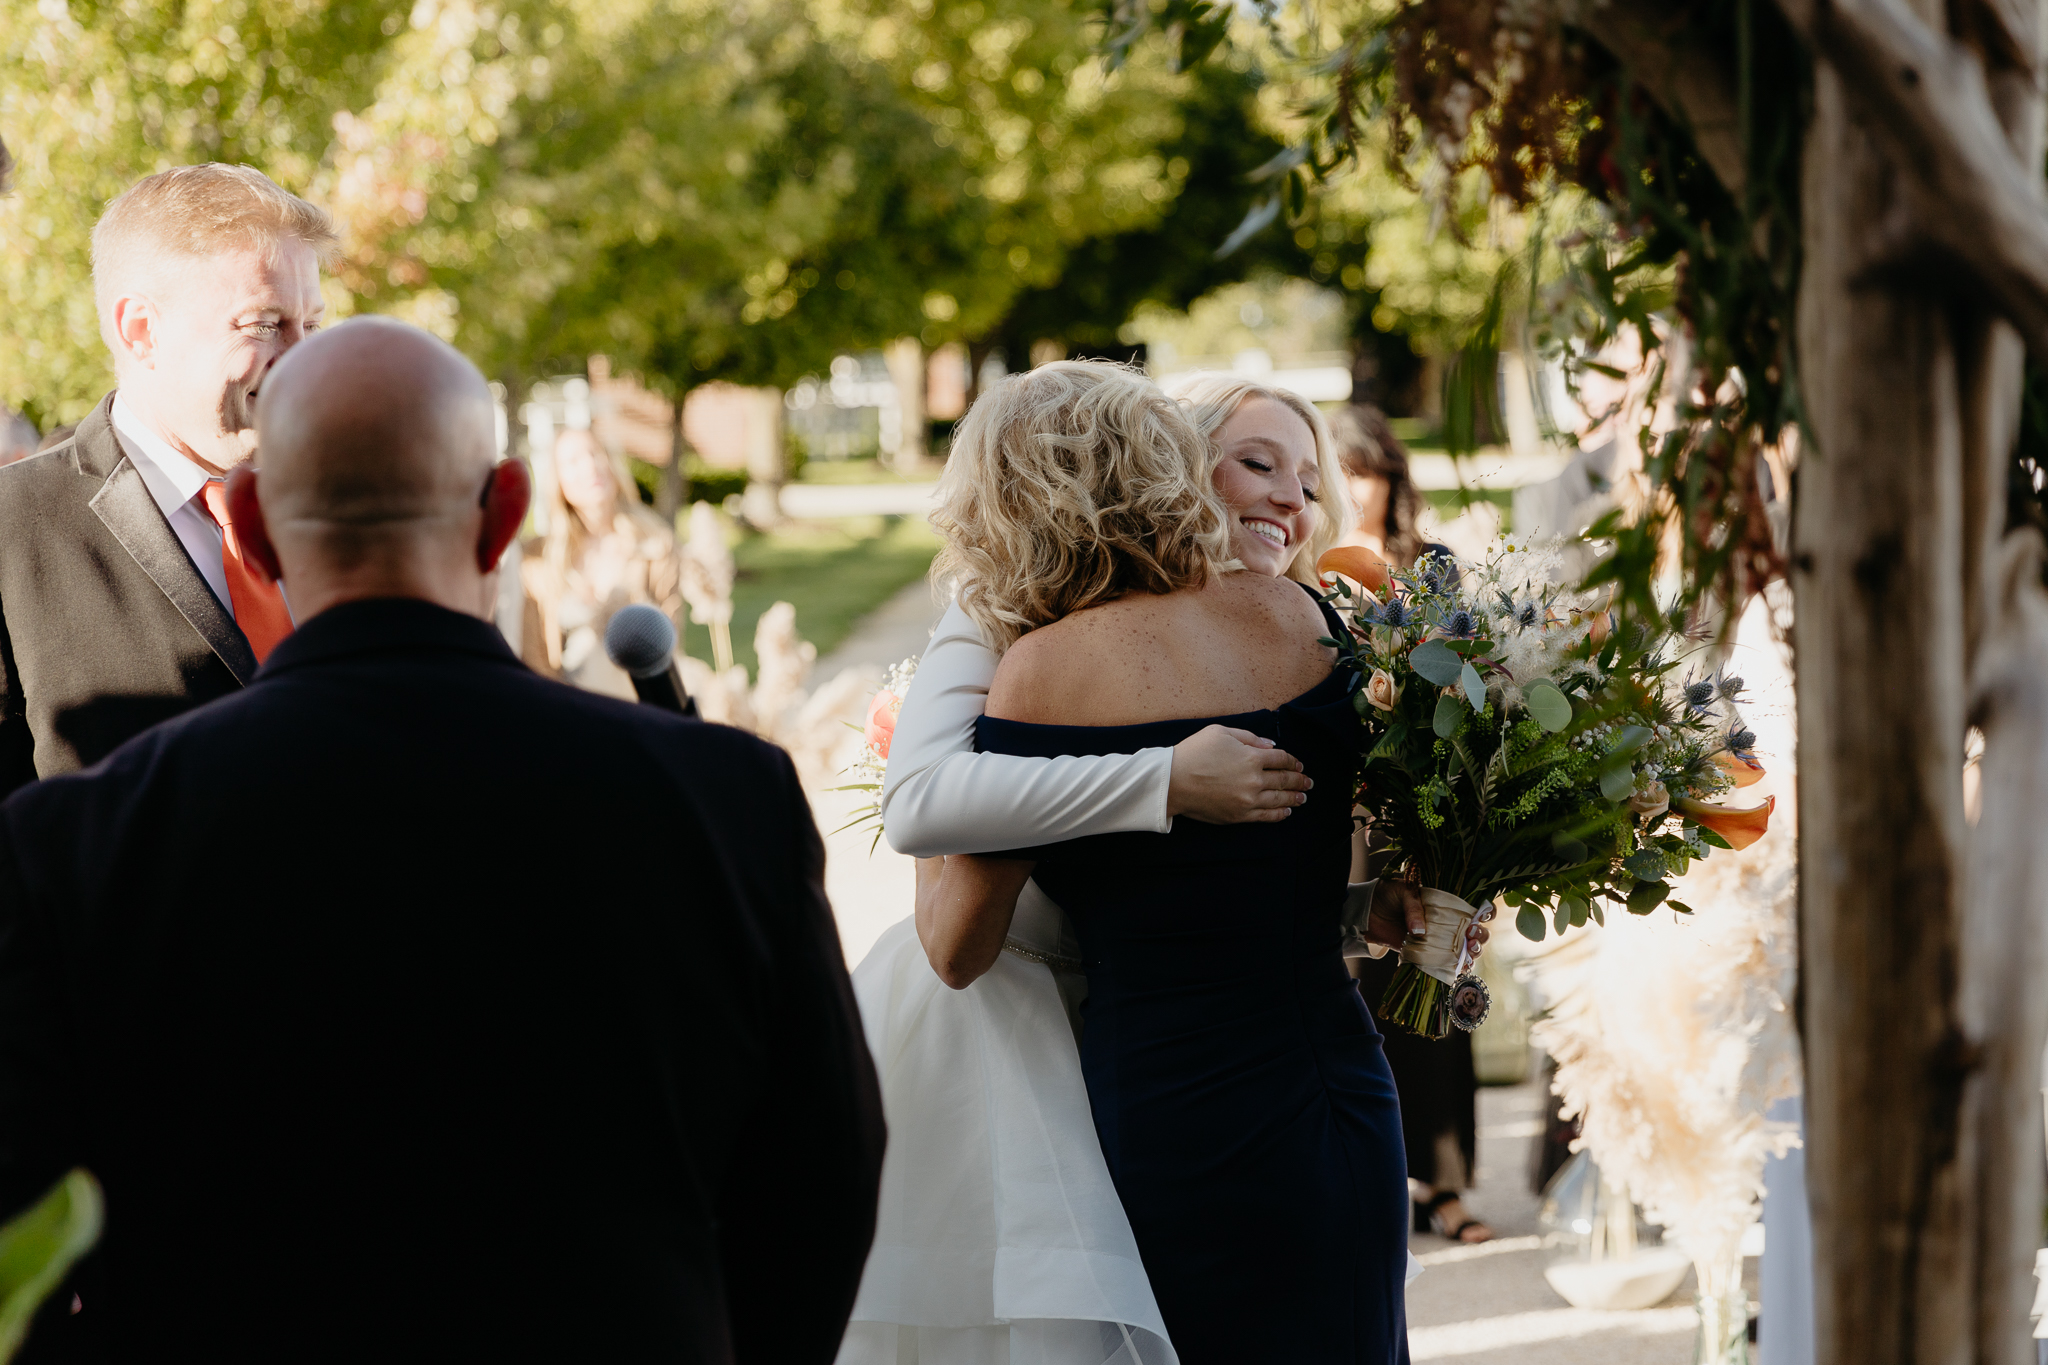 Bride hugs mom at wedding ceremony